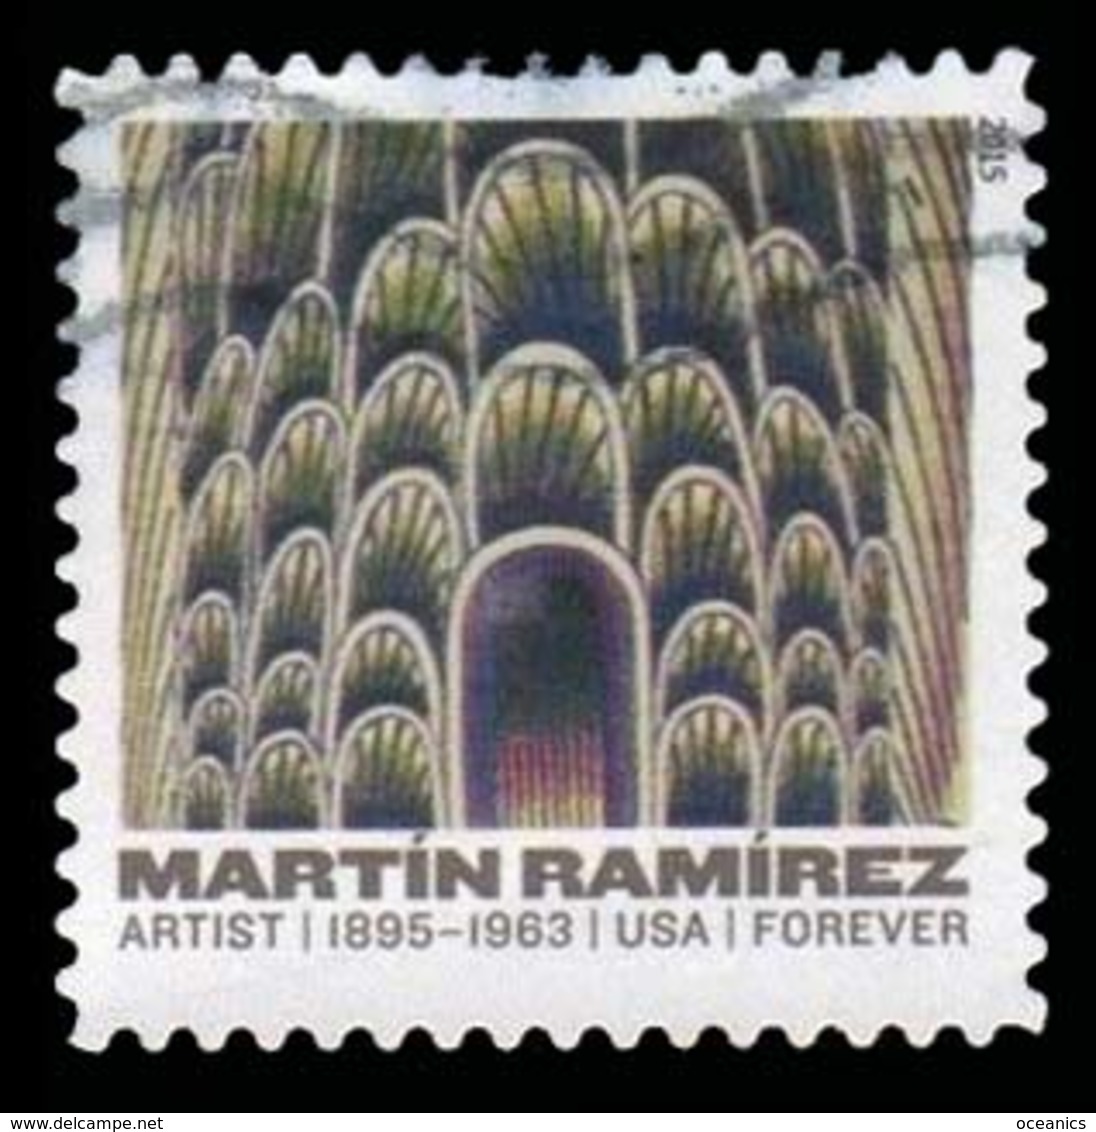 Etats-Unis / United States (Scott No.4972 - Martin Ramirez) (o) - Oblitérés